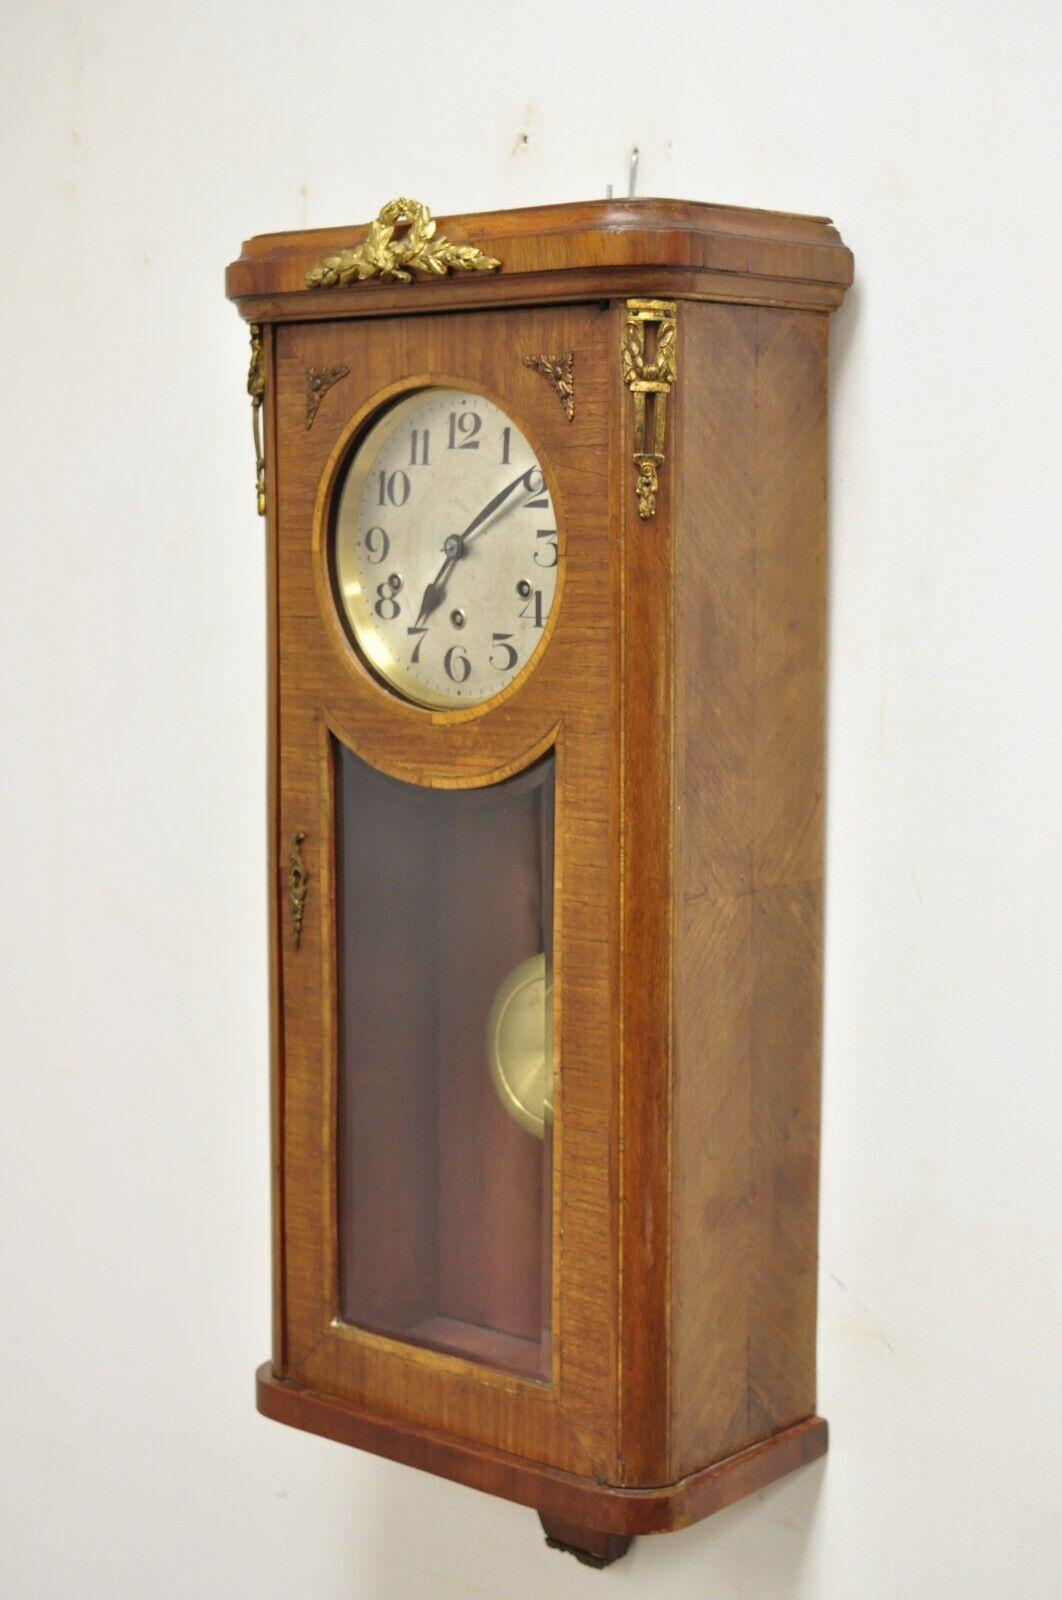 Horloge murale ancienne de style français marqueté, 8 jours avec carillon de Westminster. L'objet est en bronze doré, la porte est en verre biseauté, les clés sont incluses comme sur la photo, ainsi que les documents relatifs à la dernière révision